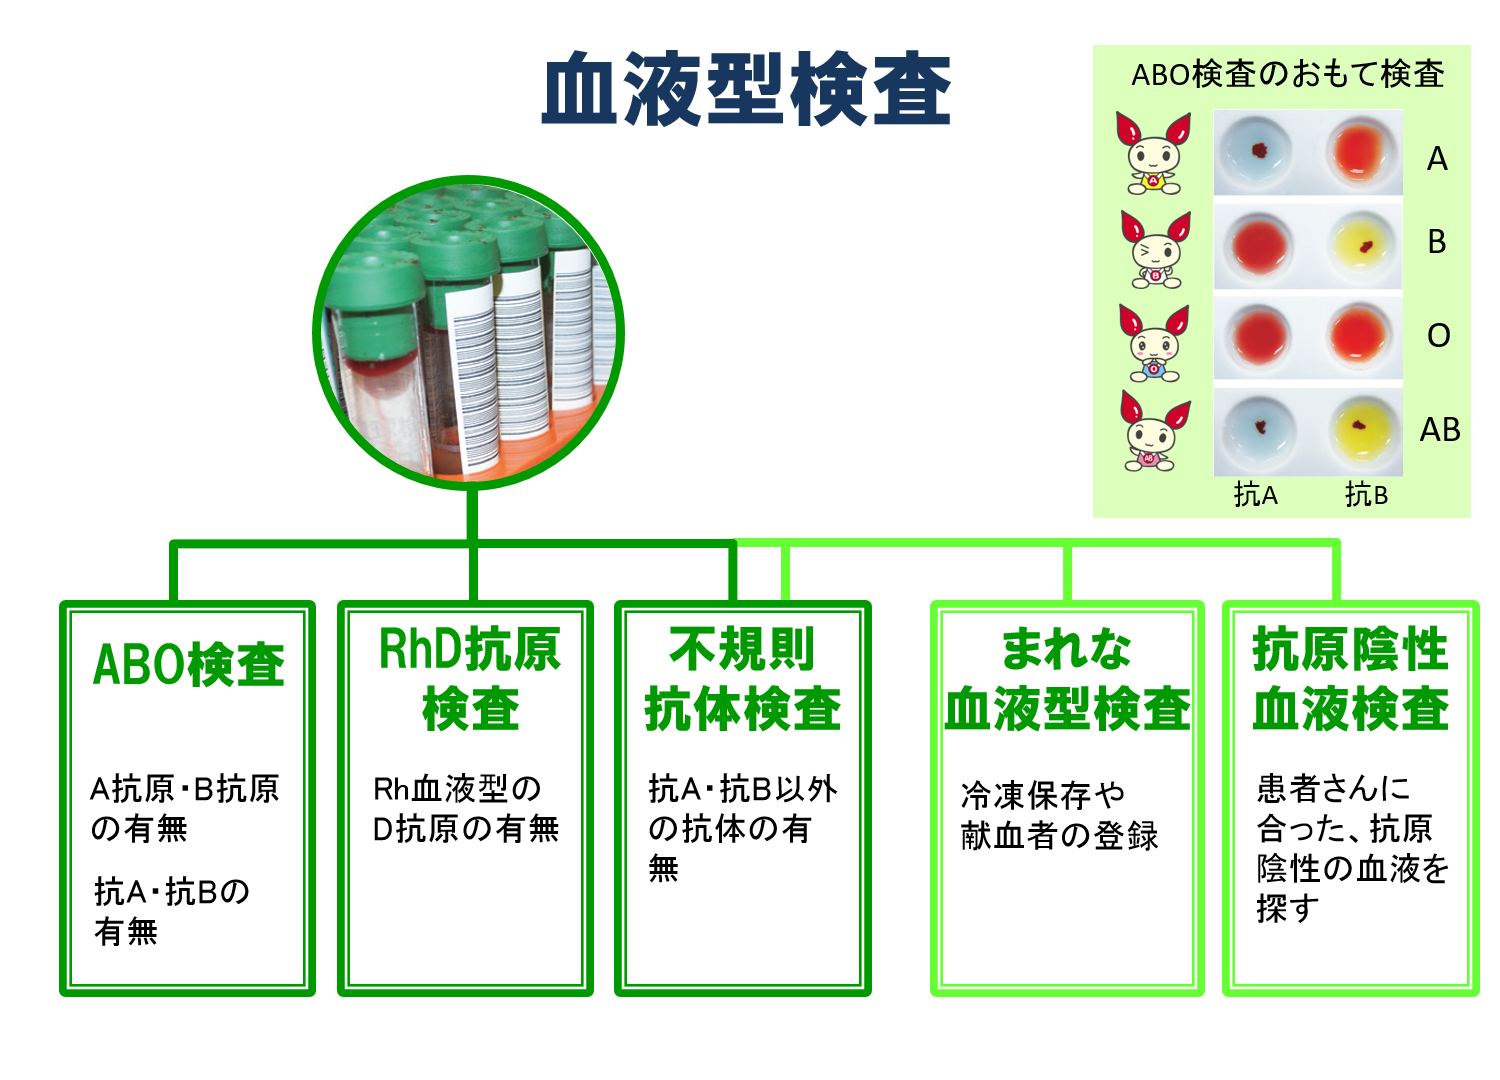 血清学的検査等 安全対策 輸血用血液製剤 医薬品情報 日本赤十字社